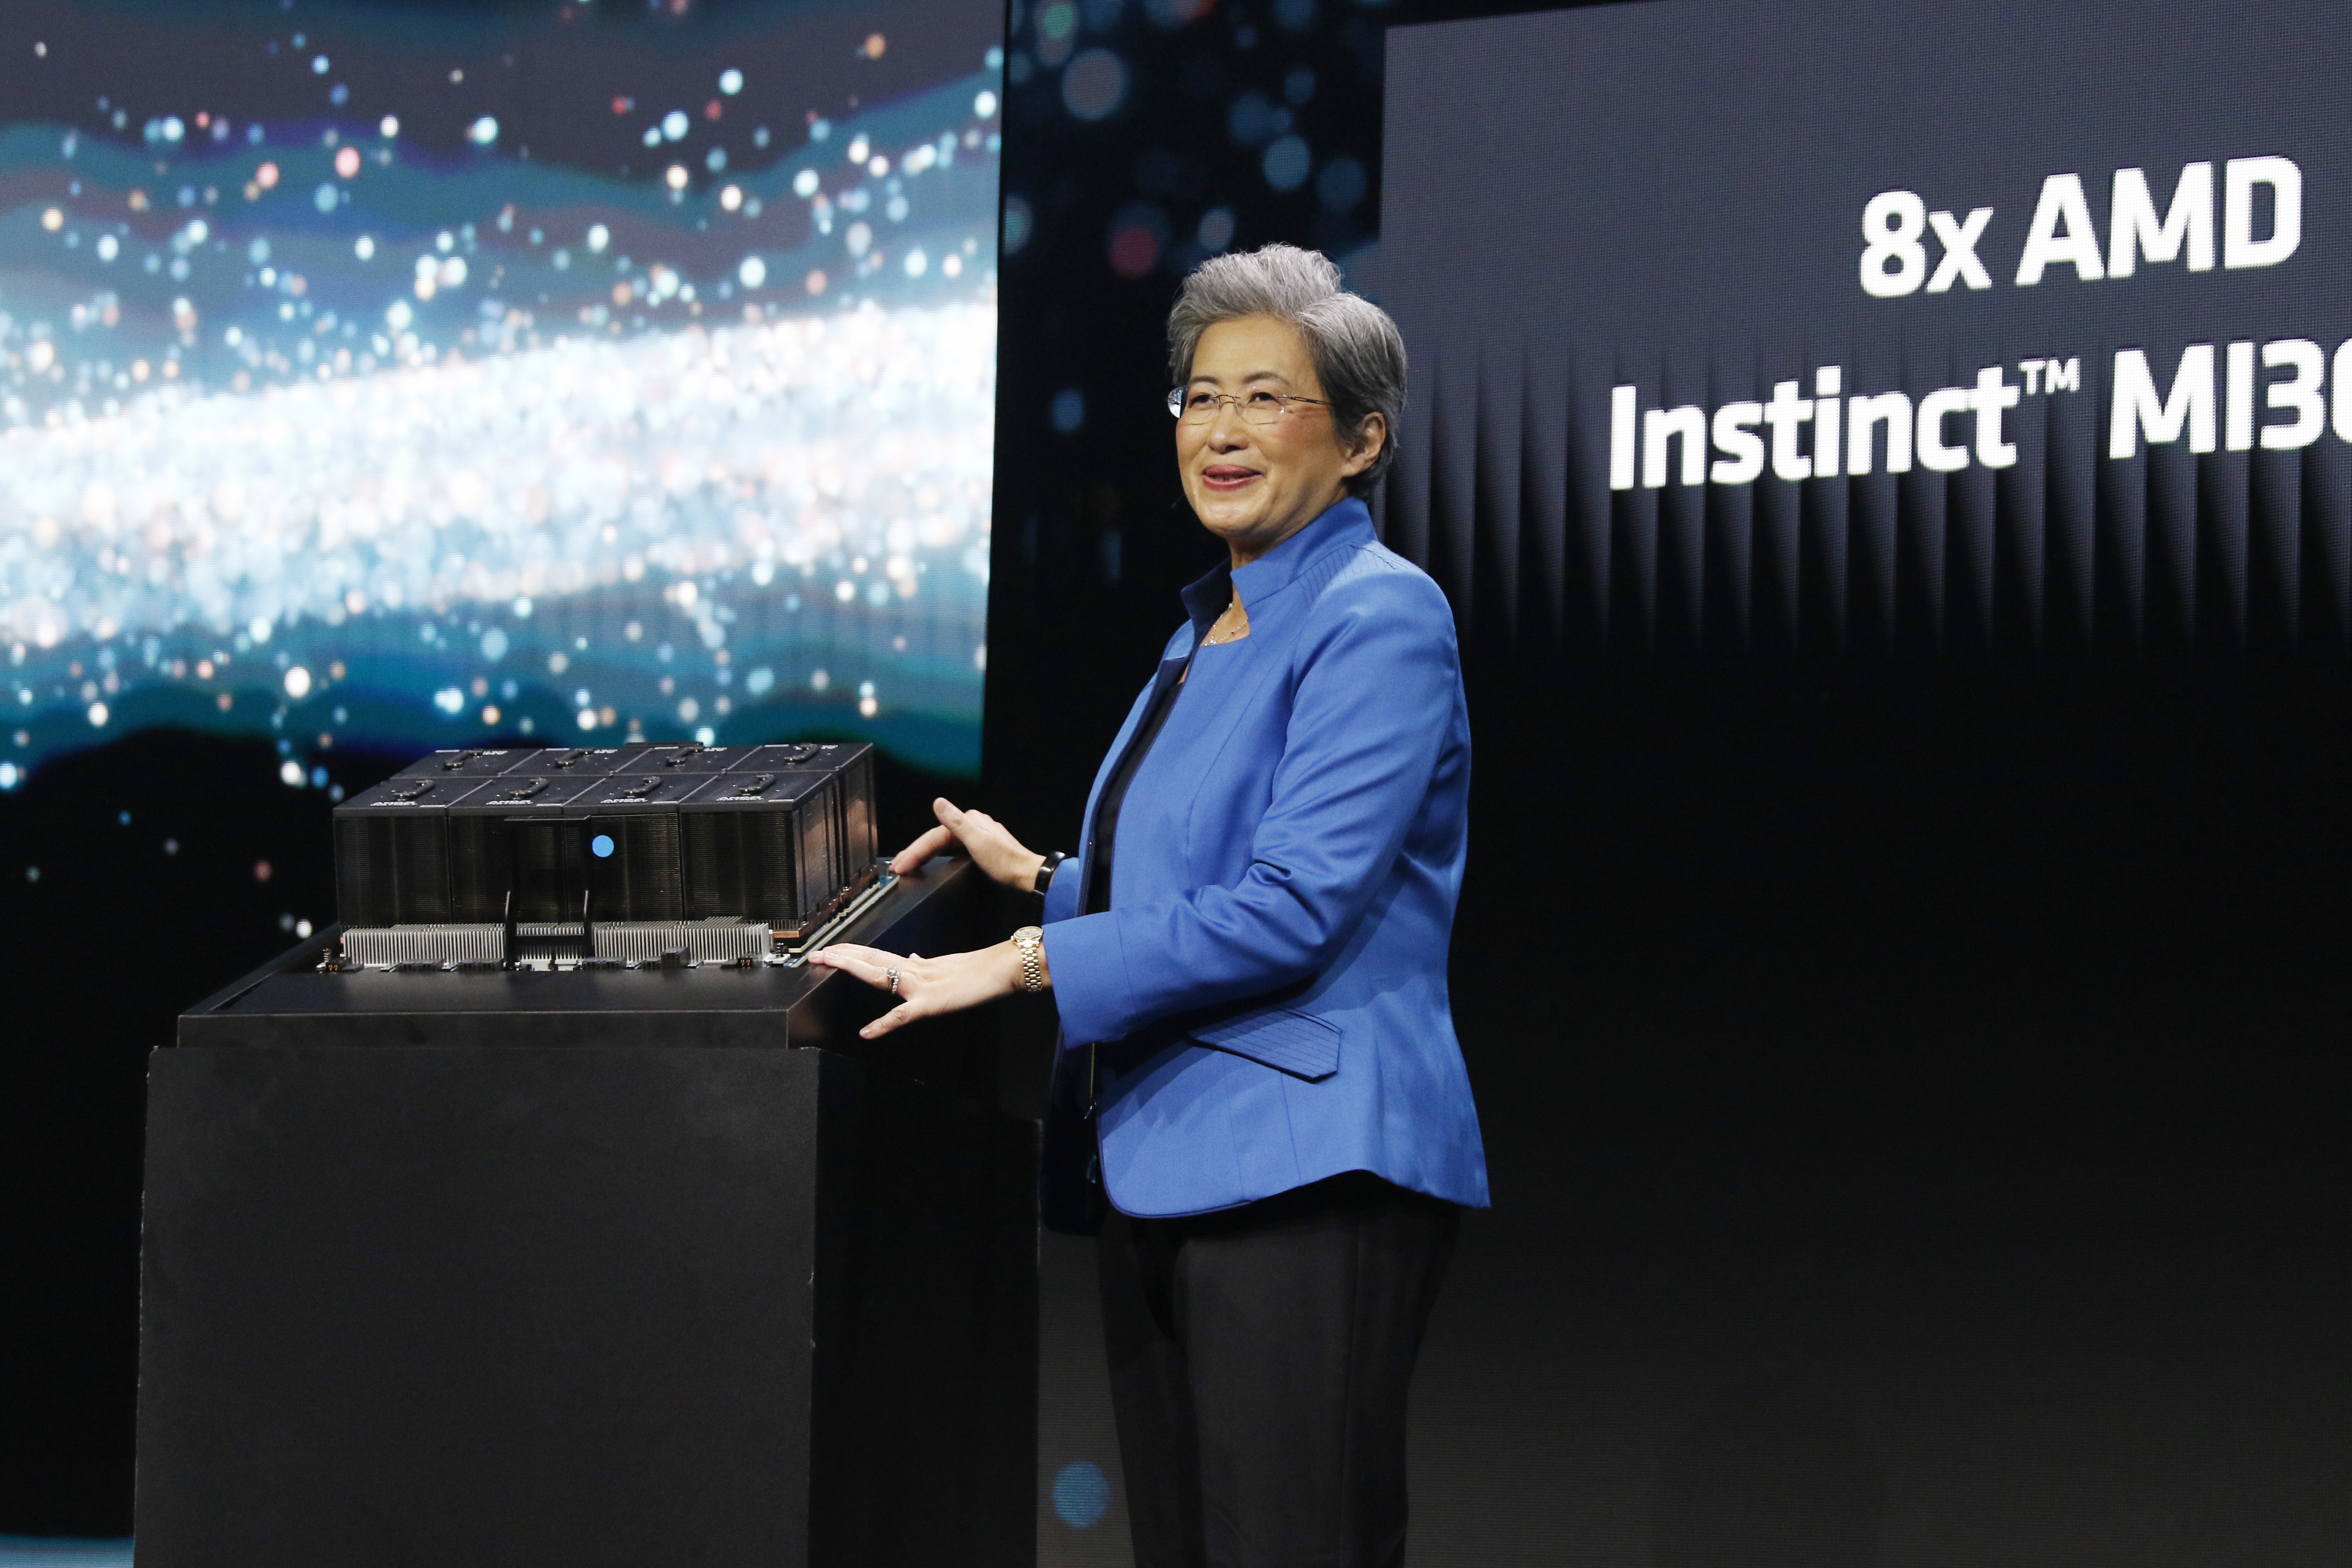 AMD zaprezentowało chipy do przyspieszonego treningu sztucznej inteligencji